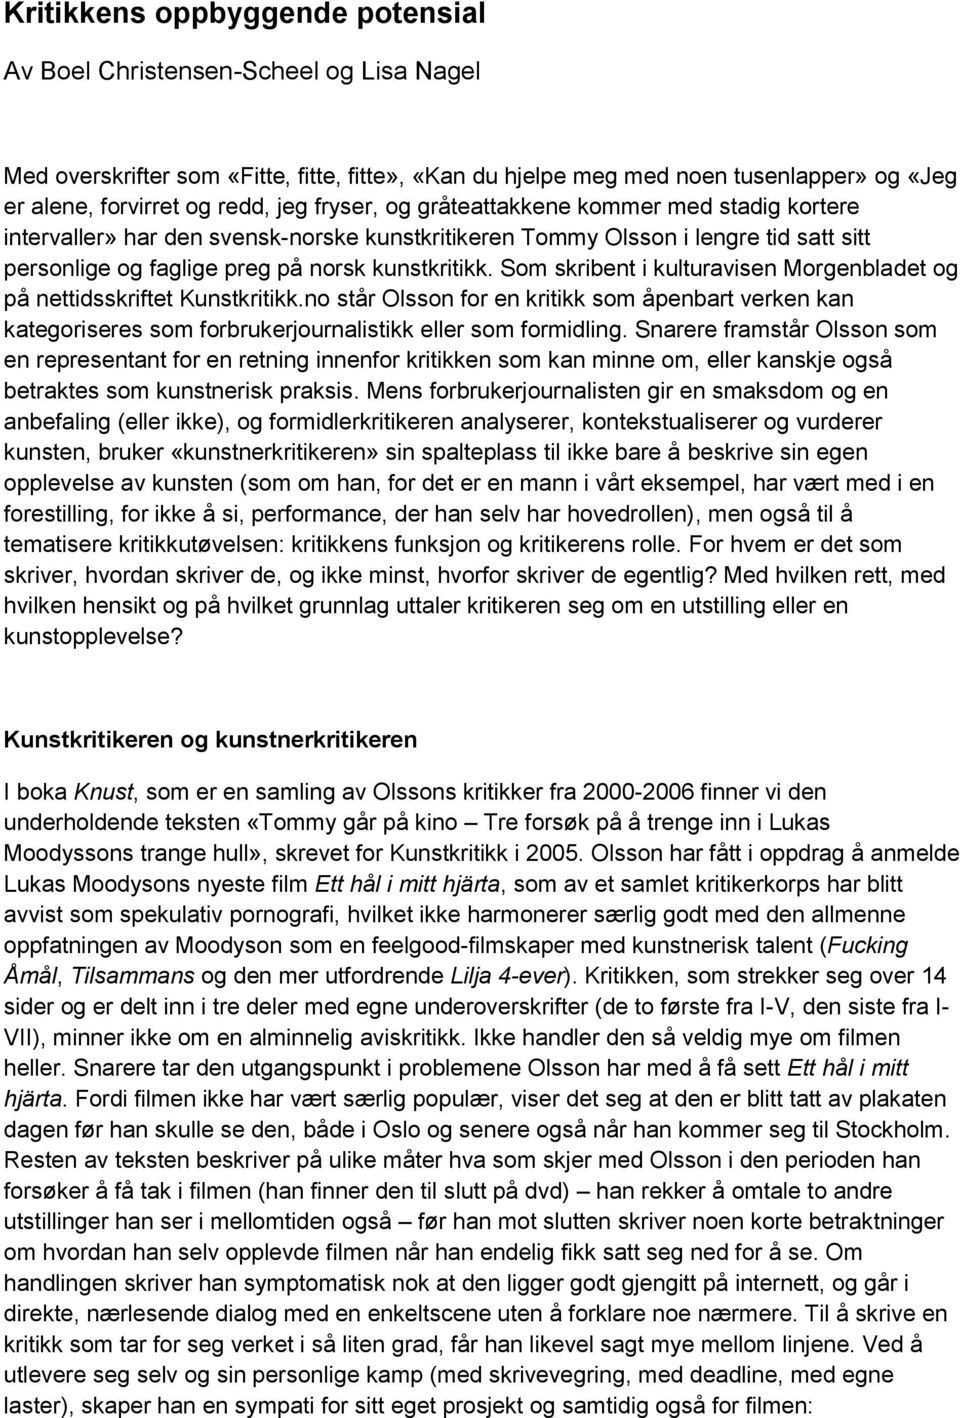 Som skribent i kulturavisen Morgenbladet og på nettidsskriftet Kunstkritikk.no står Olsson for en kritikk som åpenbart verken kan kategoriseres som forbrukerjournalistikk eller som formidling.